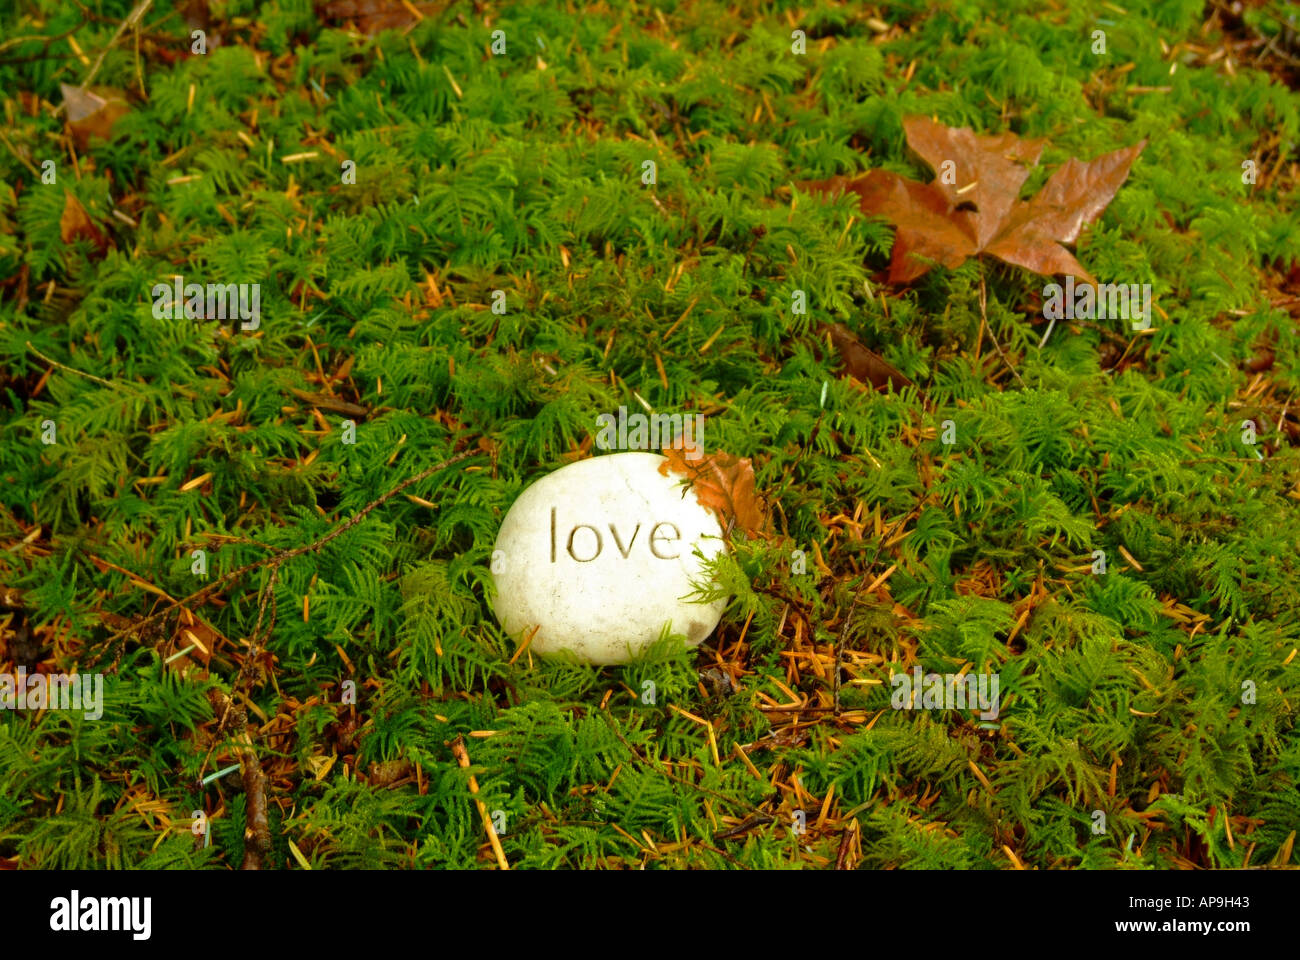 Con la palabra amor en piedra tallada en el musgo en un bosque Foto de stock